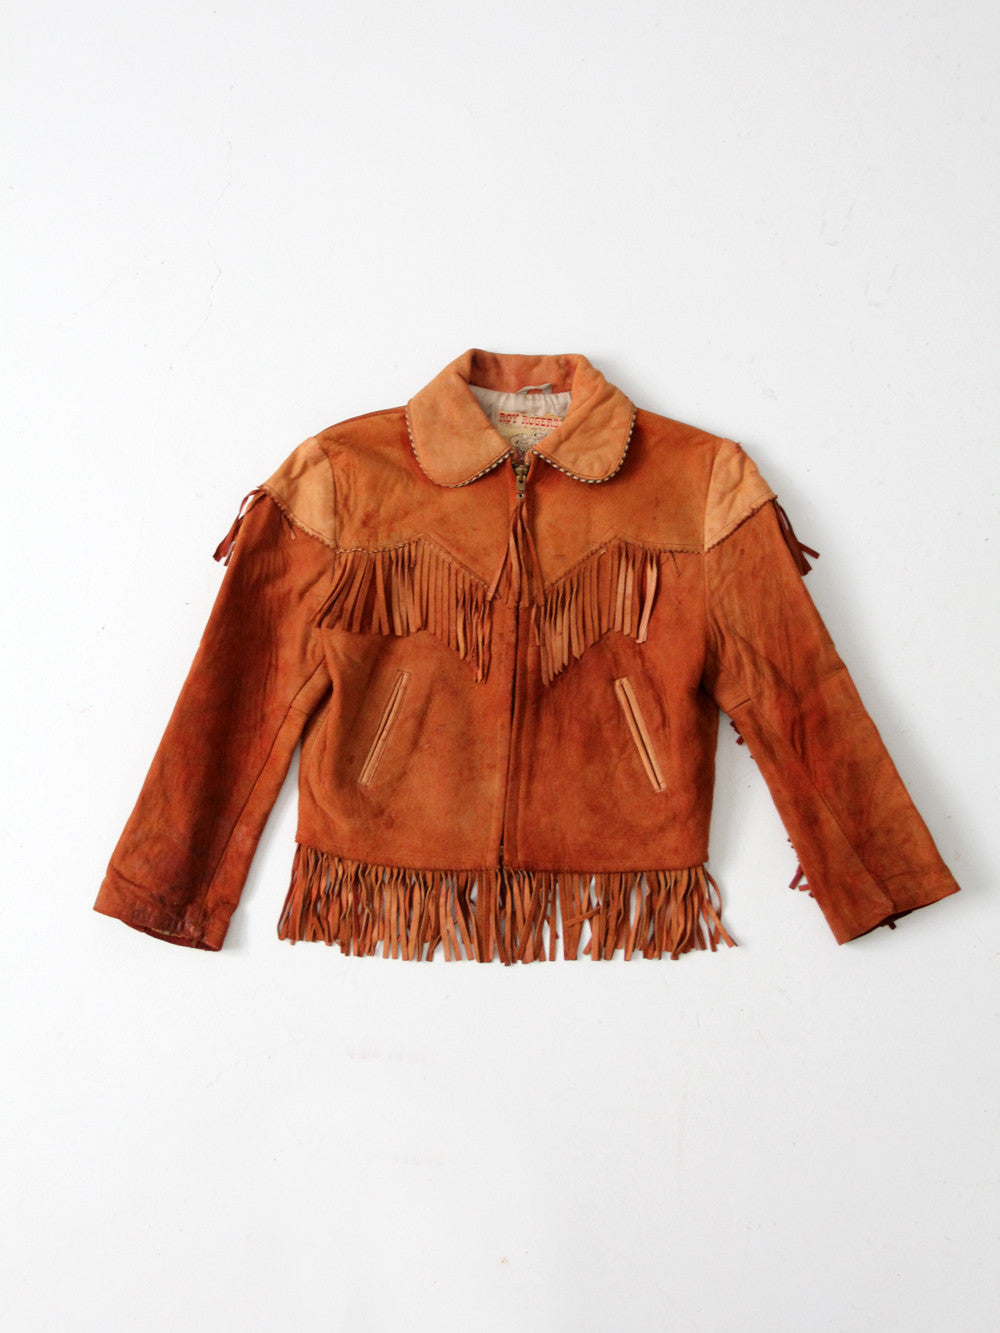 1950s Roy Rogers children's jacket